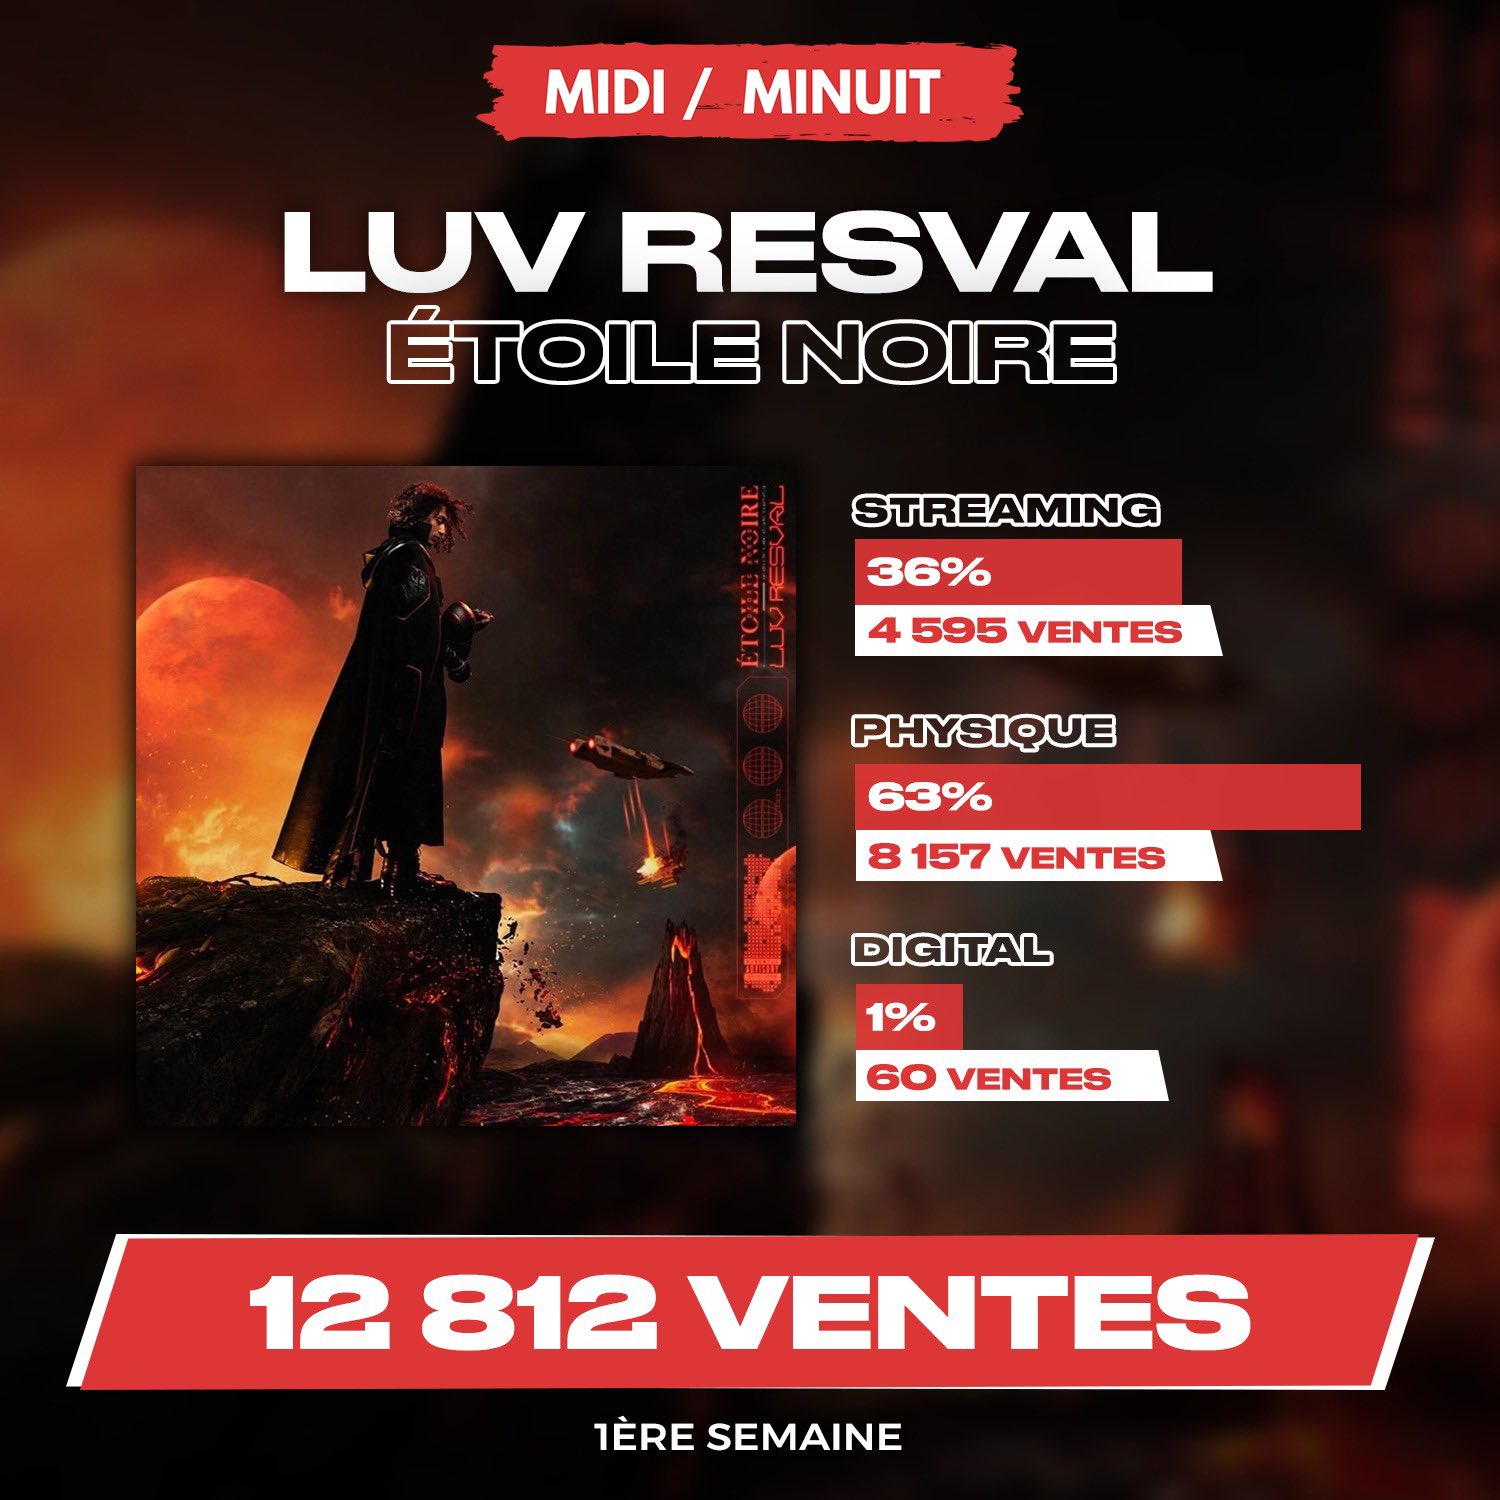 Midi/Minuit on Twitter: "🚨 Luv Resval vend 12 812 exemplaires en première  semaine avec son premier album « Étoile noire » ! https://t.co/fnENOArmtp"  / Twitter